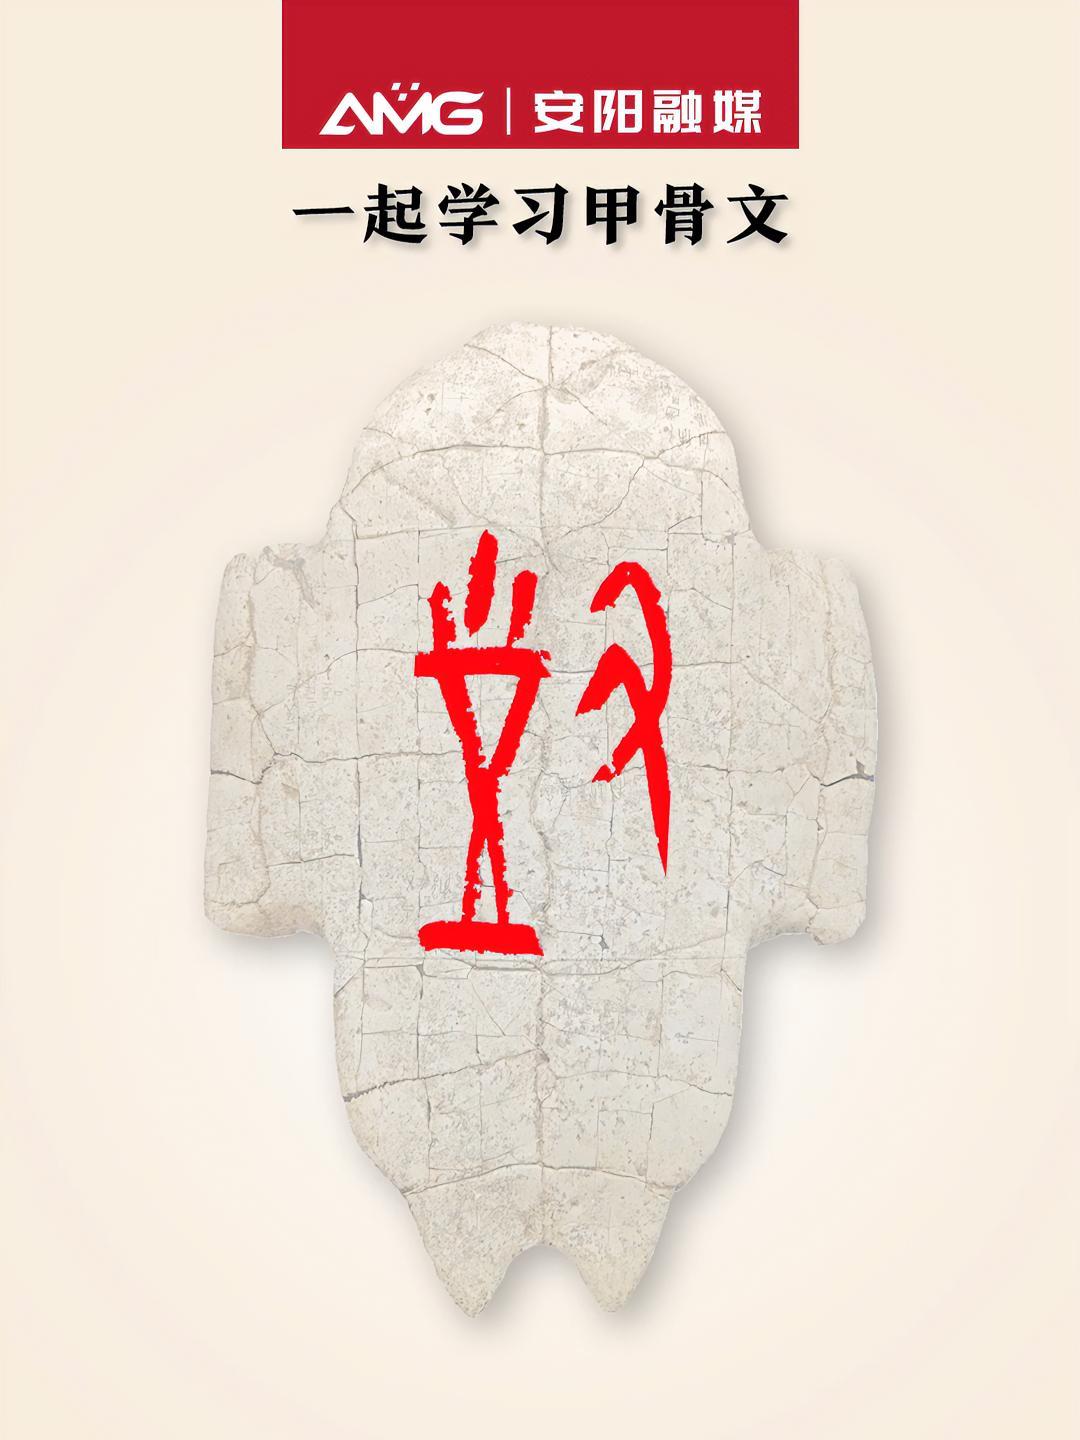 一起学习甲骨文对安阳甲骨文素材来源中国文字博物馆微信公众号安阳融